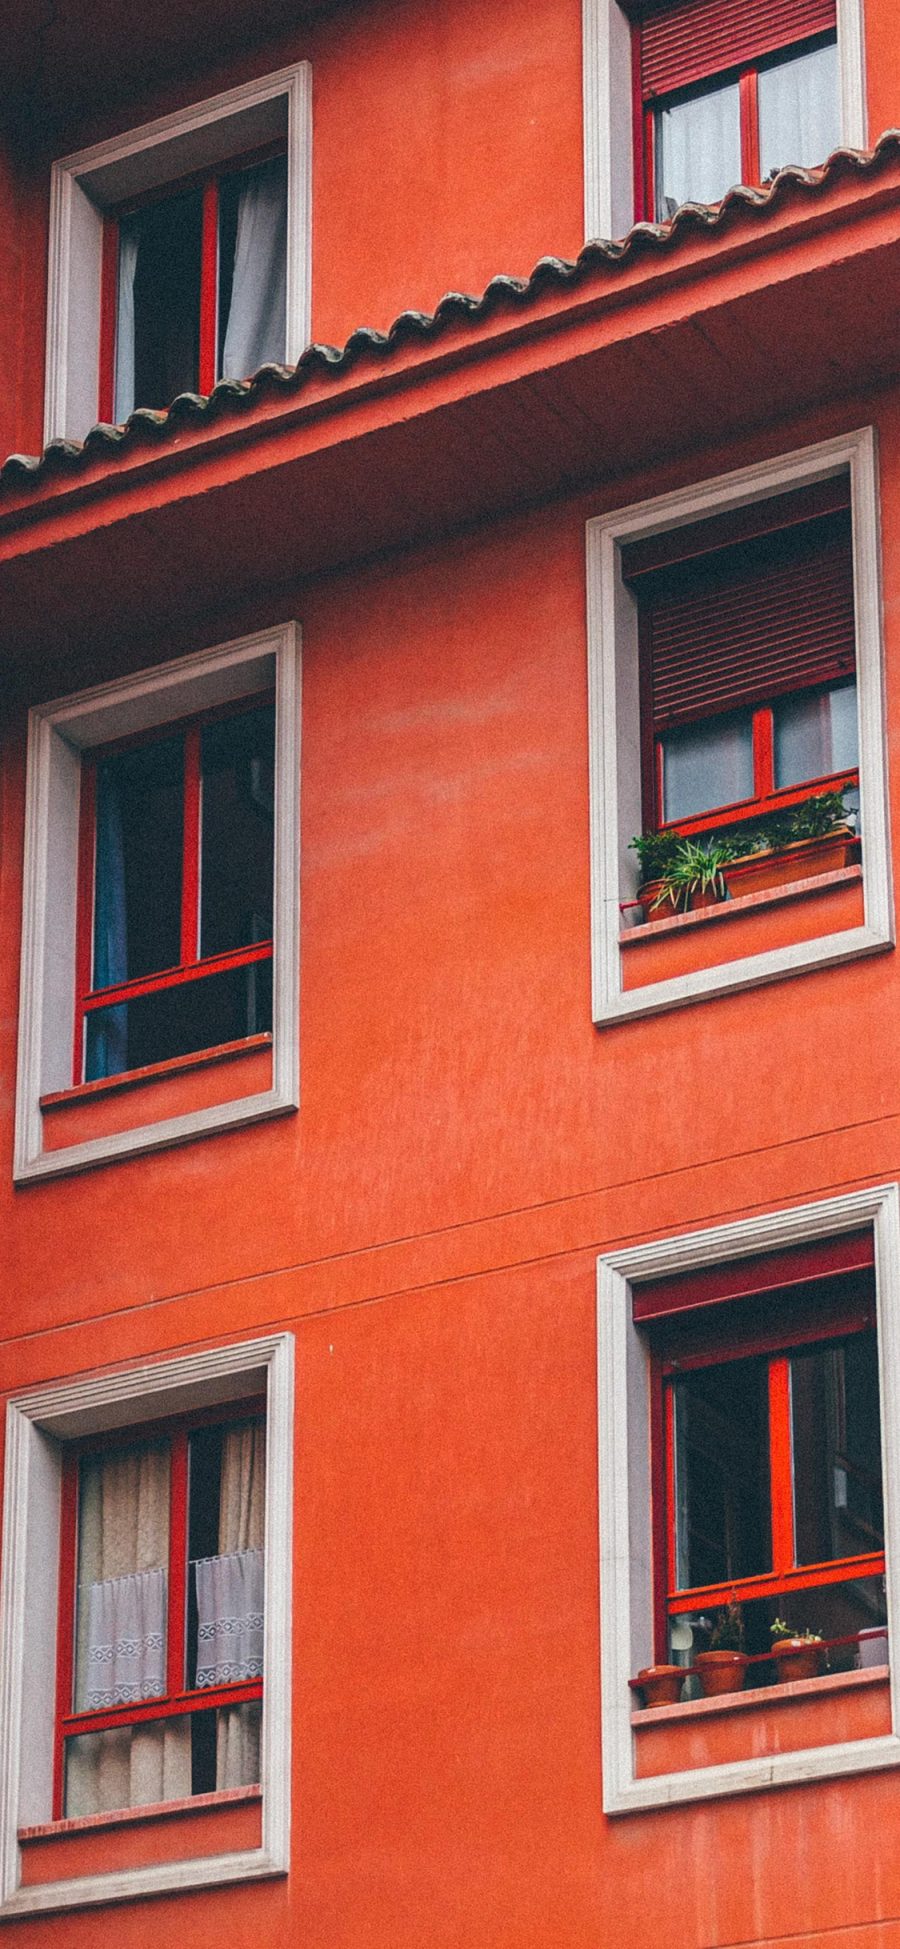 [2436×1125]高楼大厦 建筑 红色 窗户 苹果手机壁纸图片